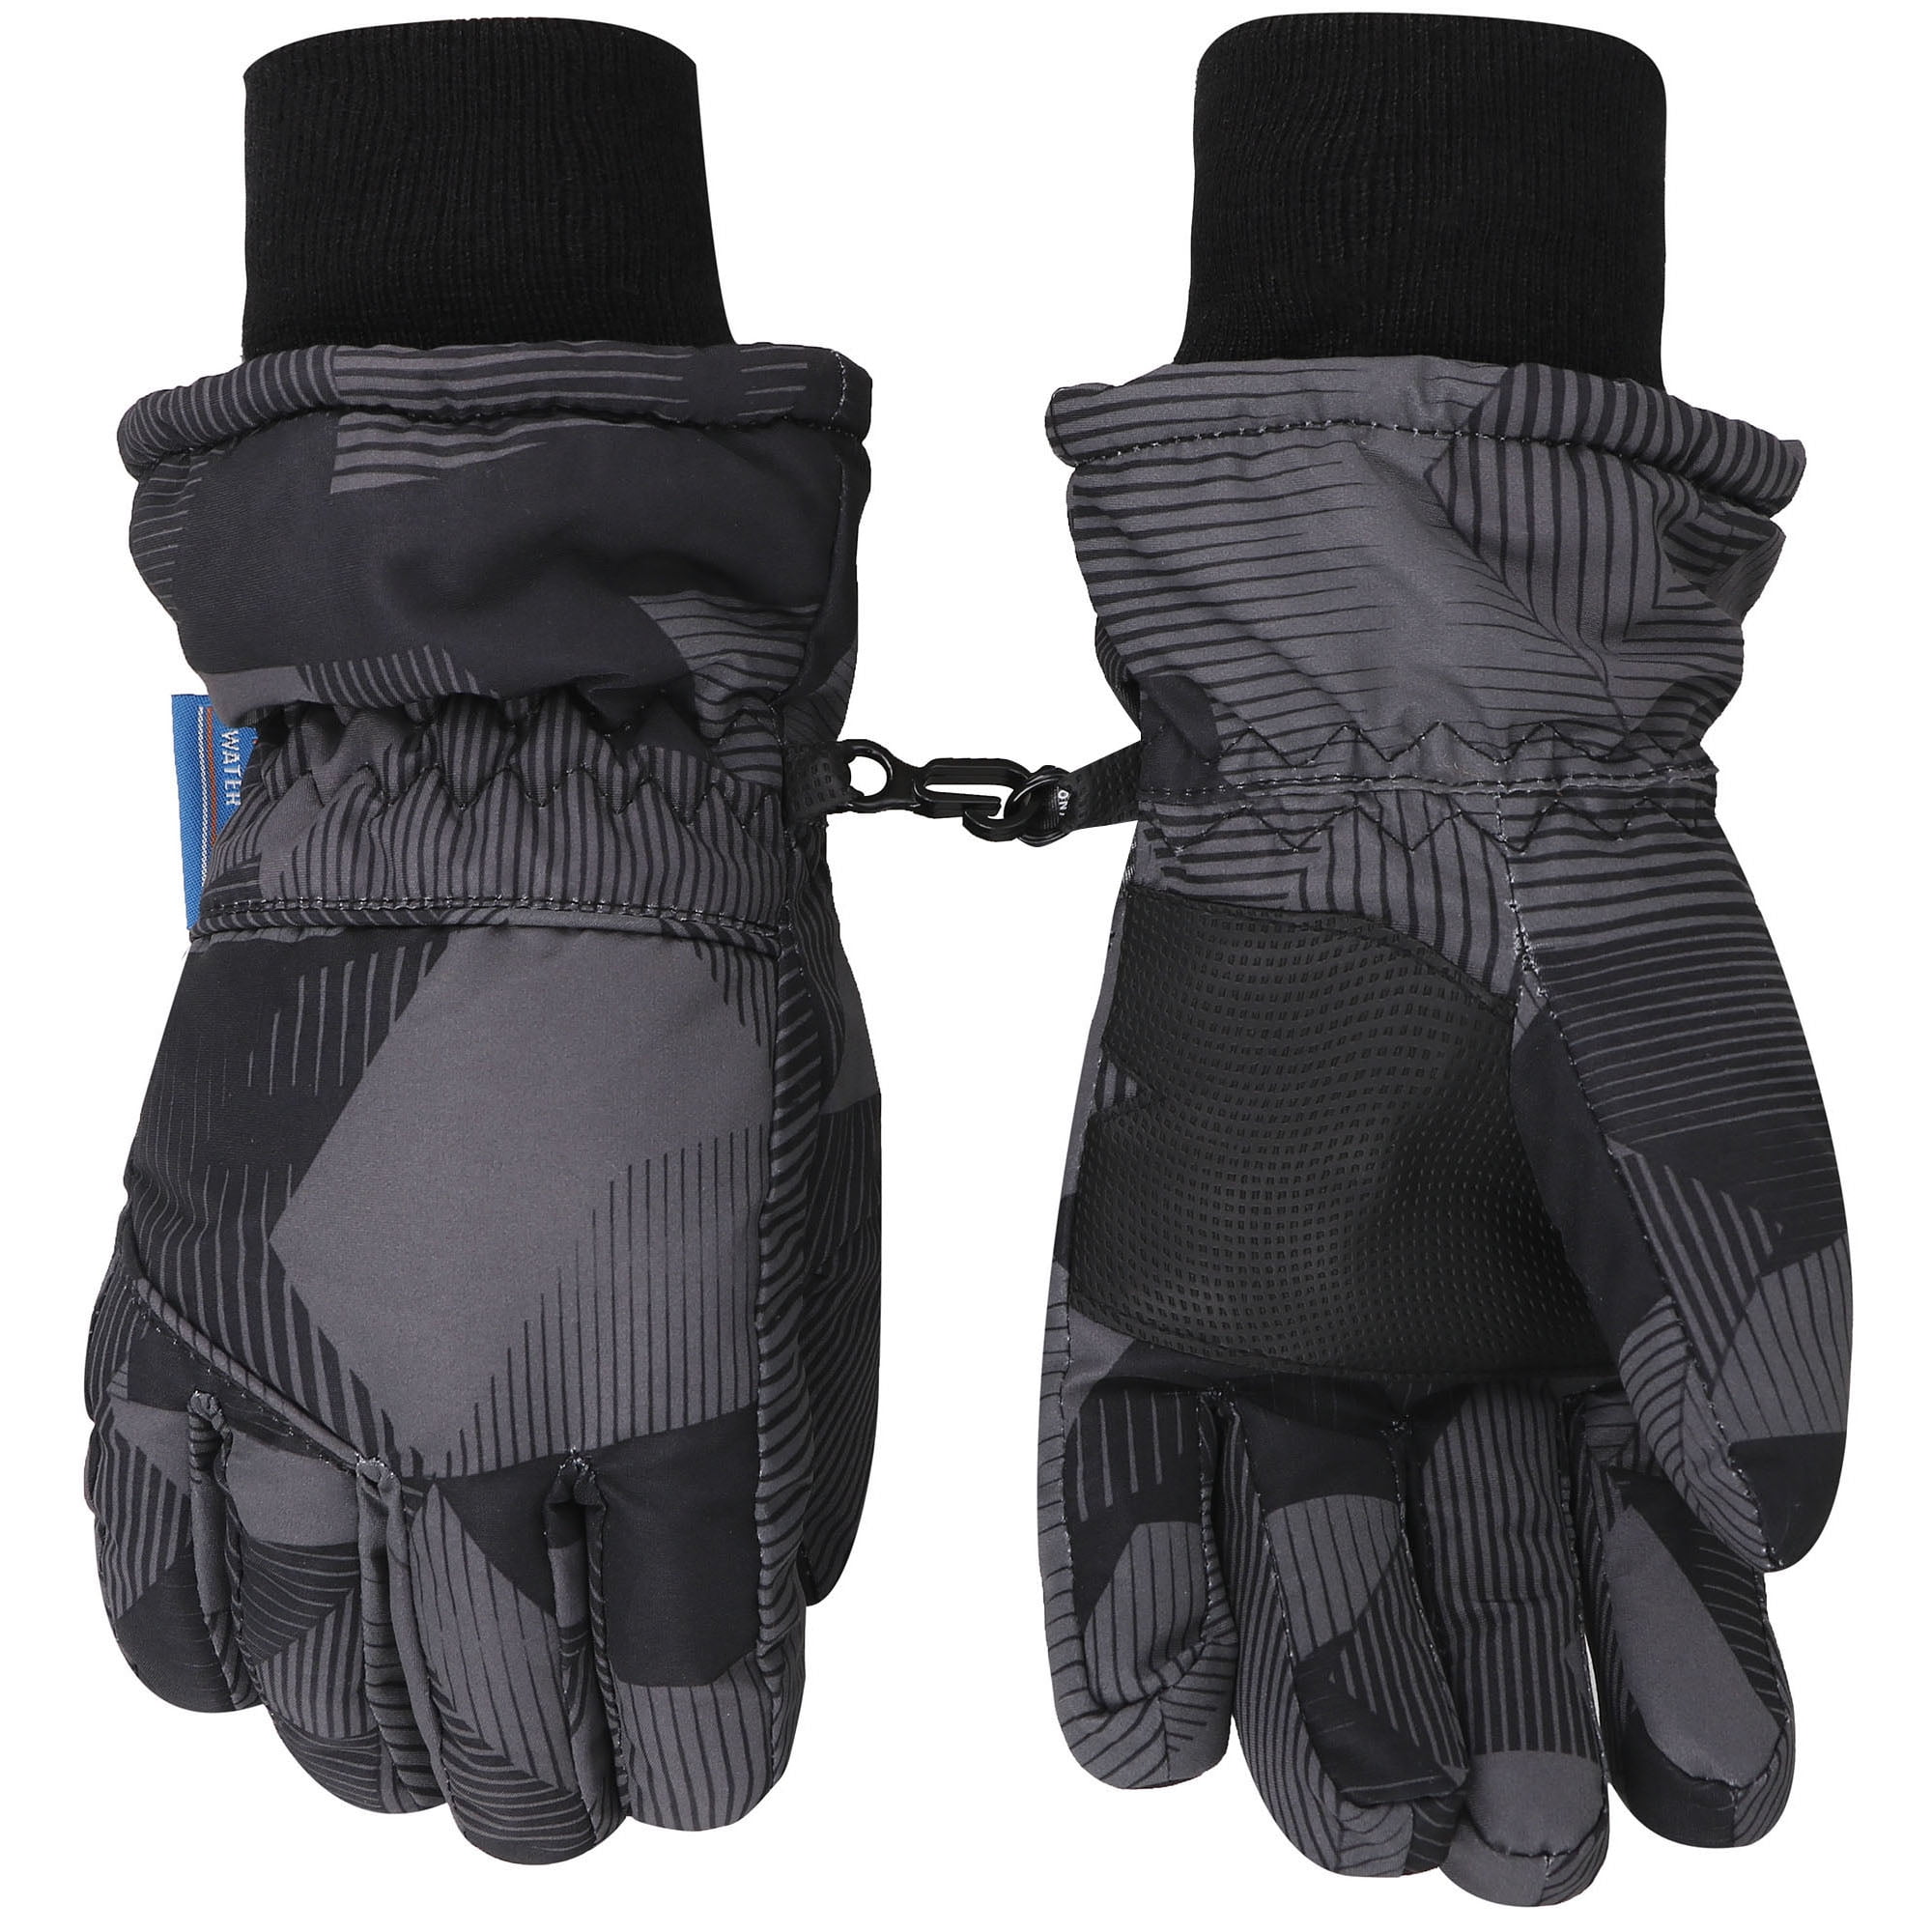 Kids Teenagers 3M Lined Waterproof Ski Gloves,L,Black1 - Walmart.com